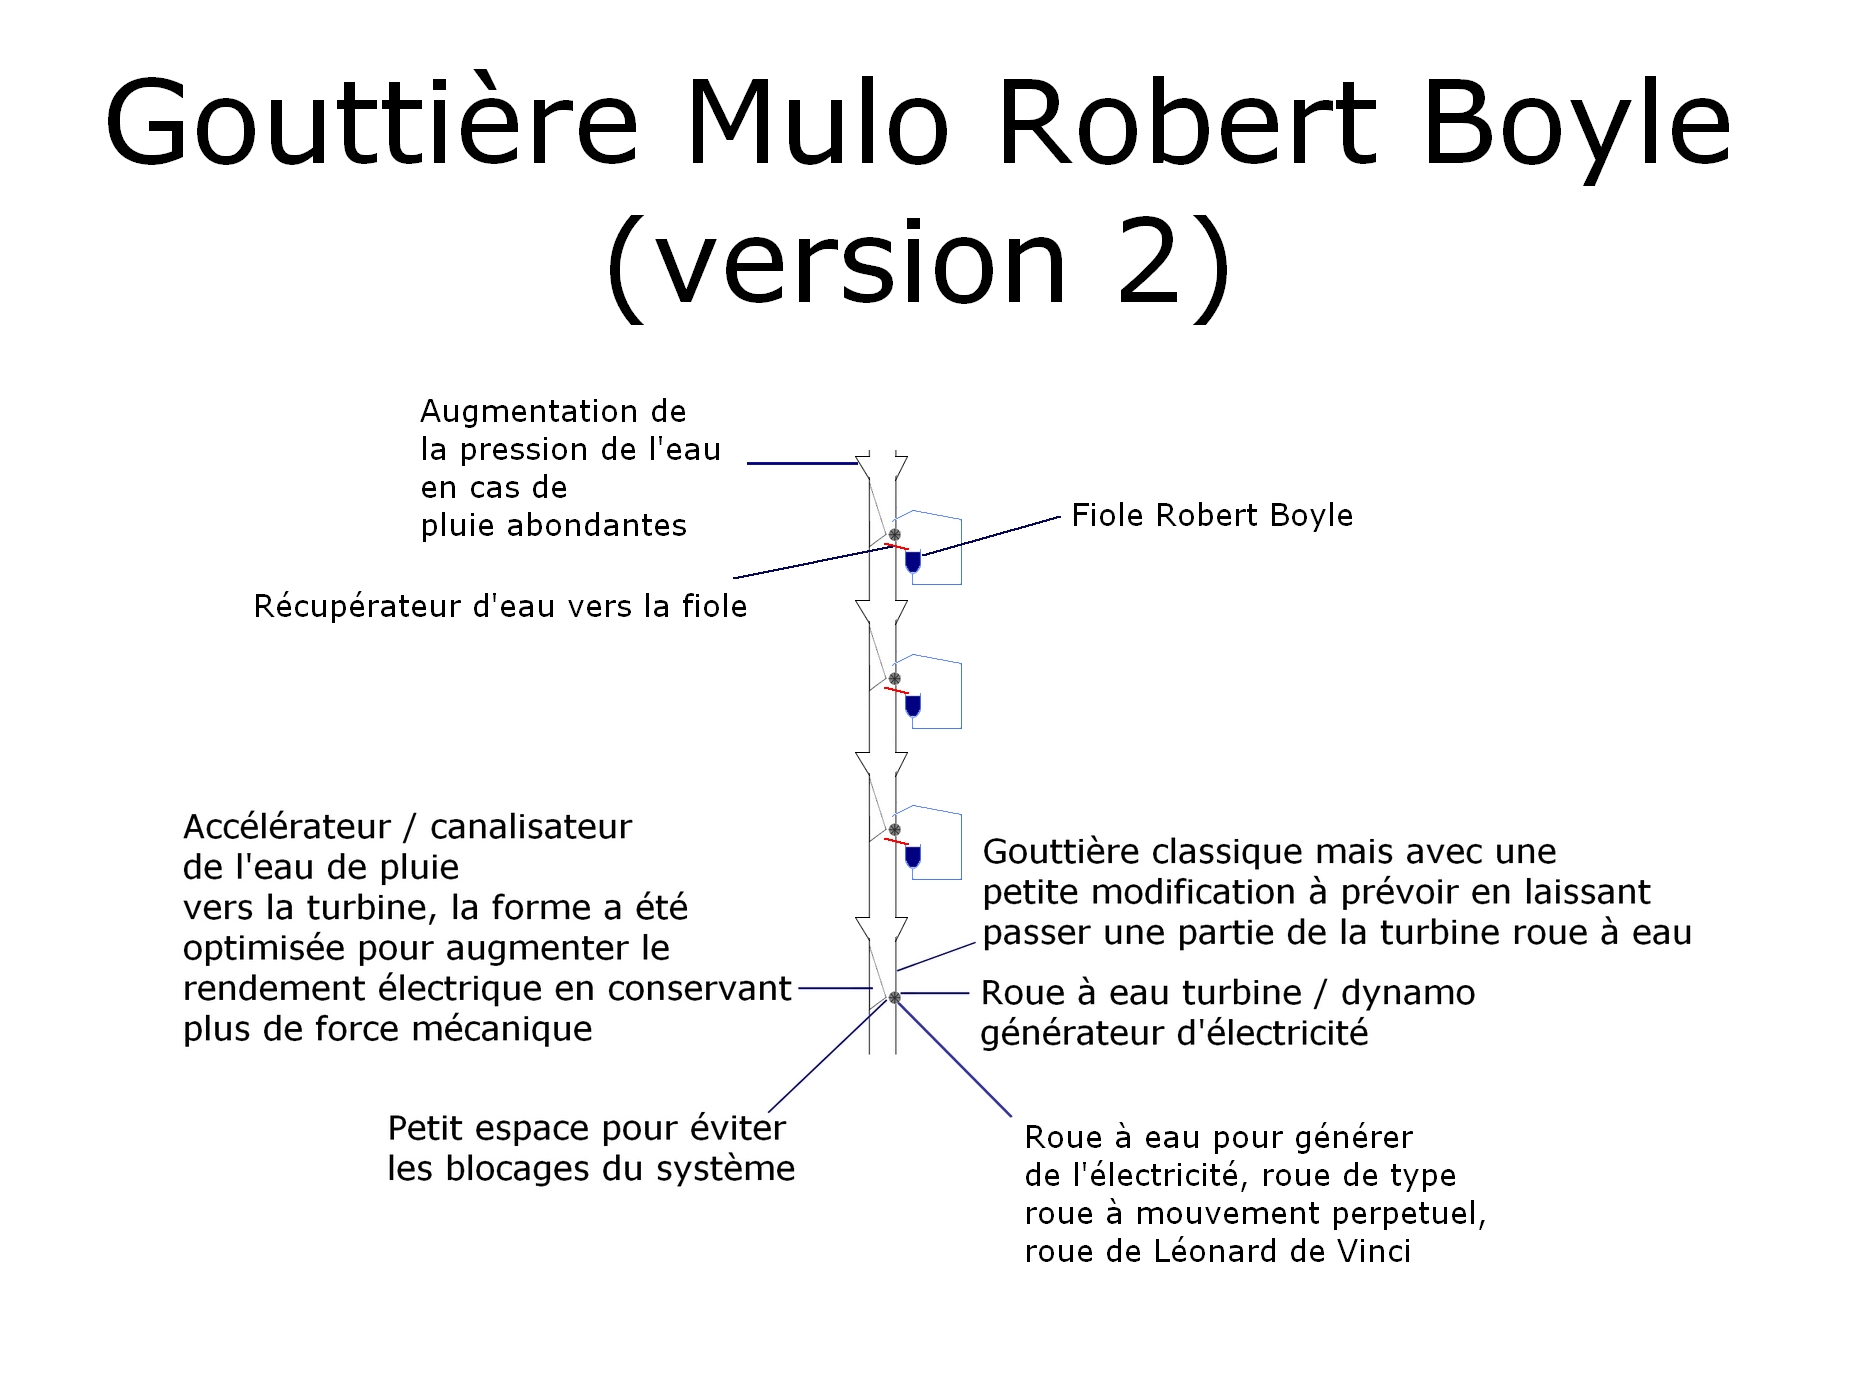 La gouttière Mulo Robert Boyle v2